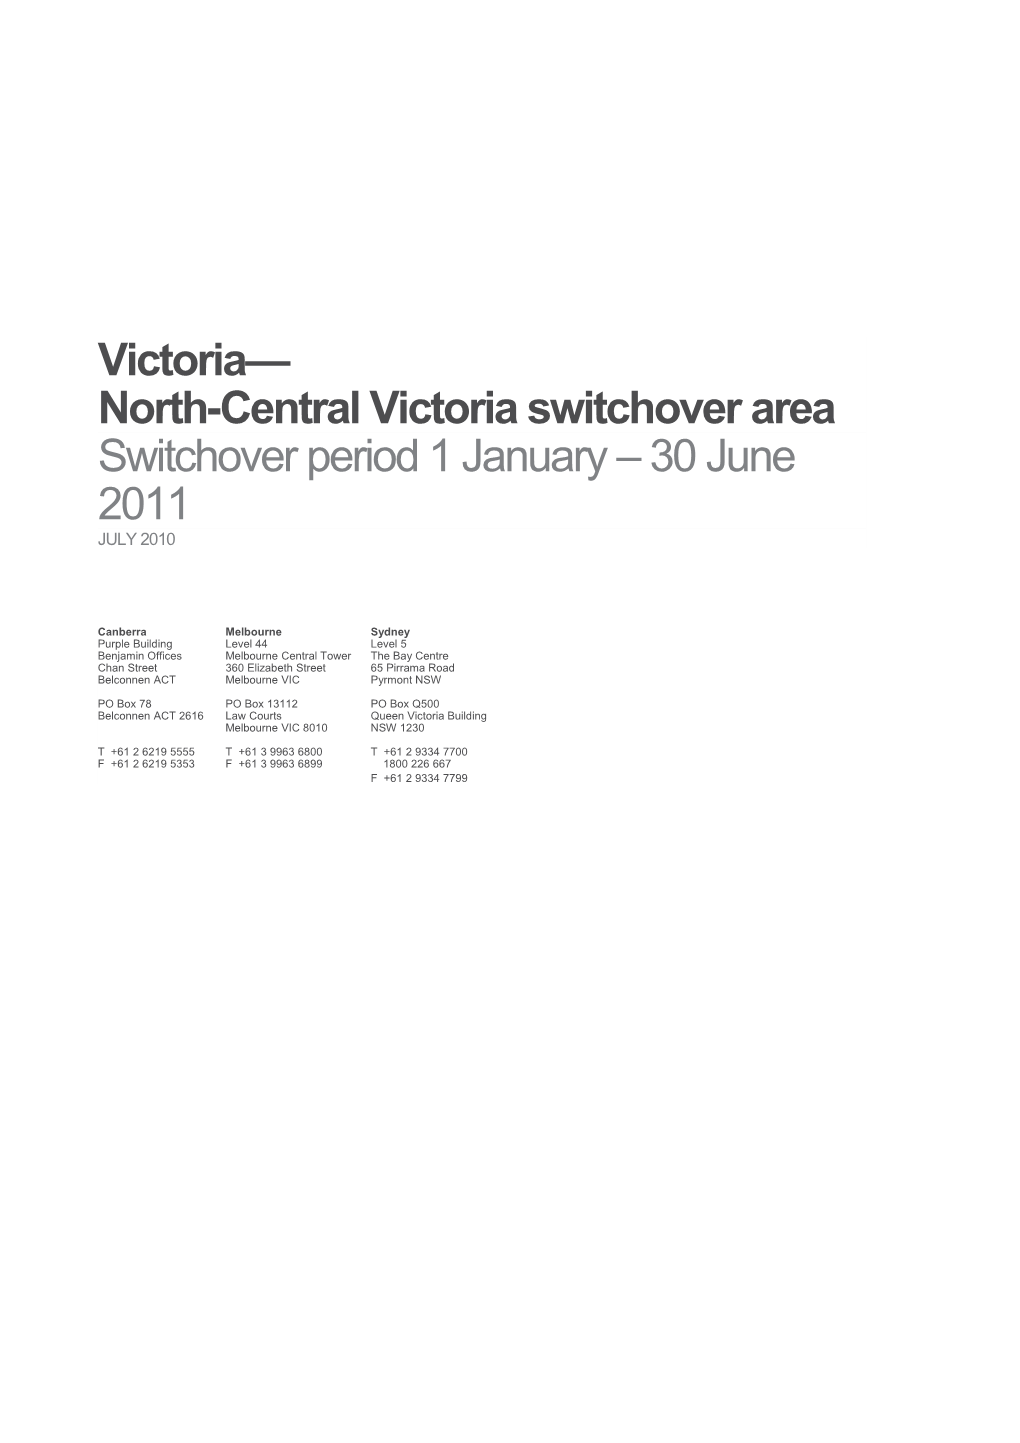 Victoria North-Central Victoria Switchover Area